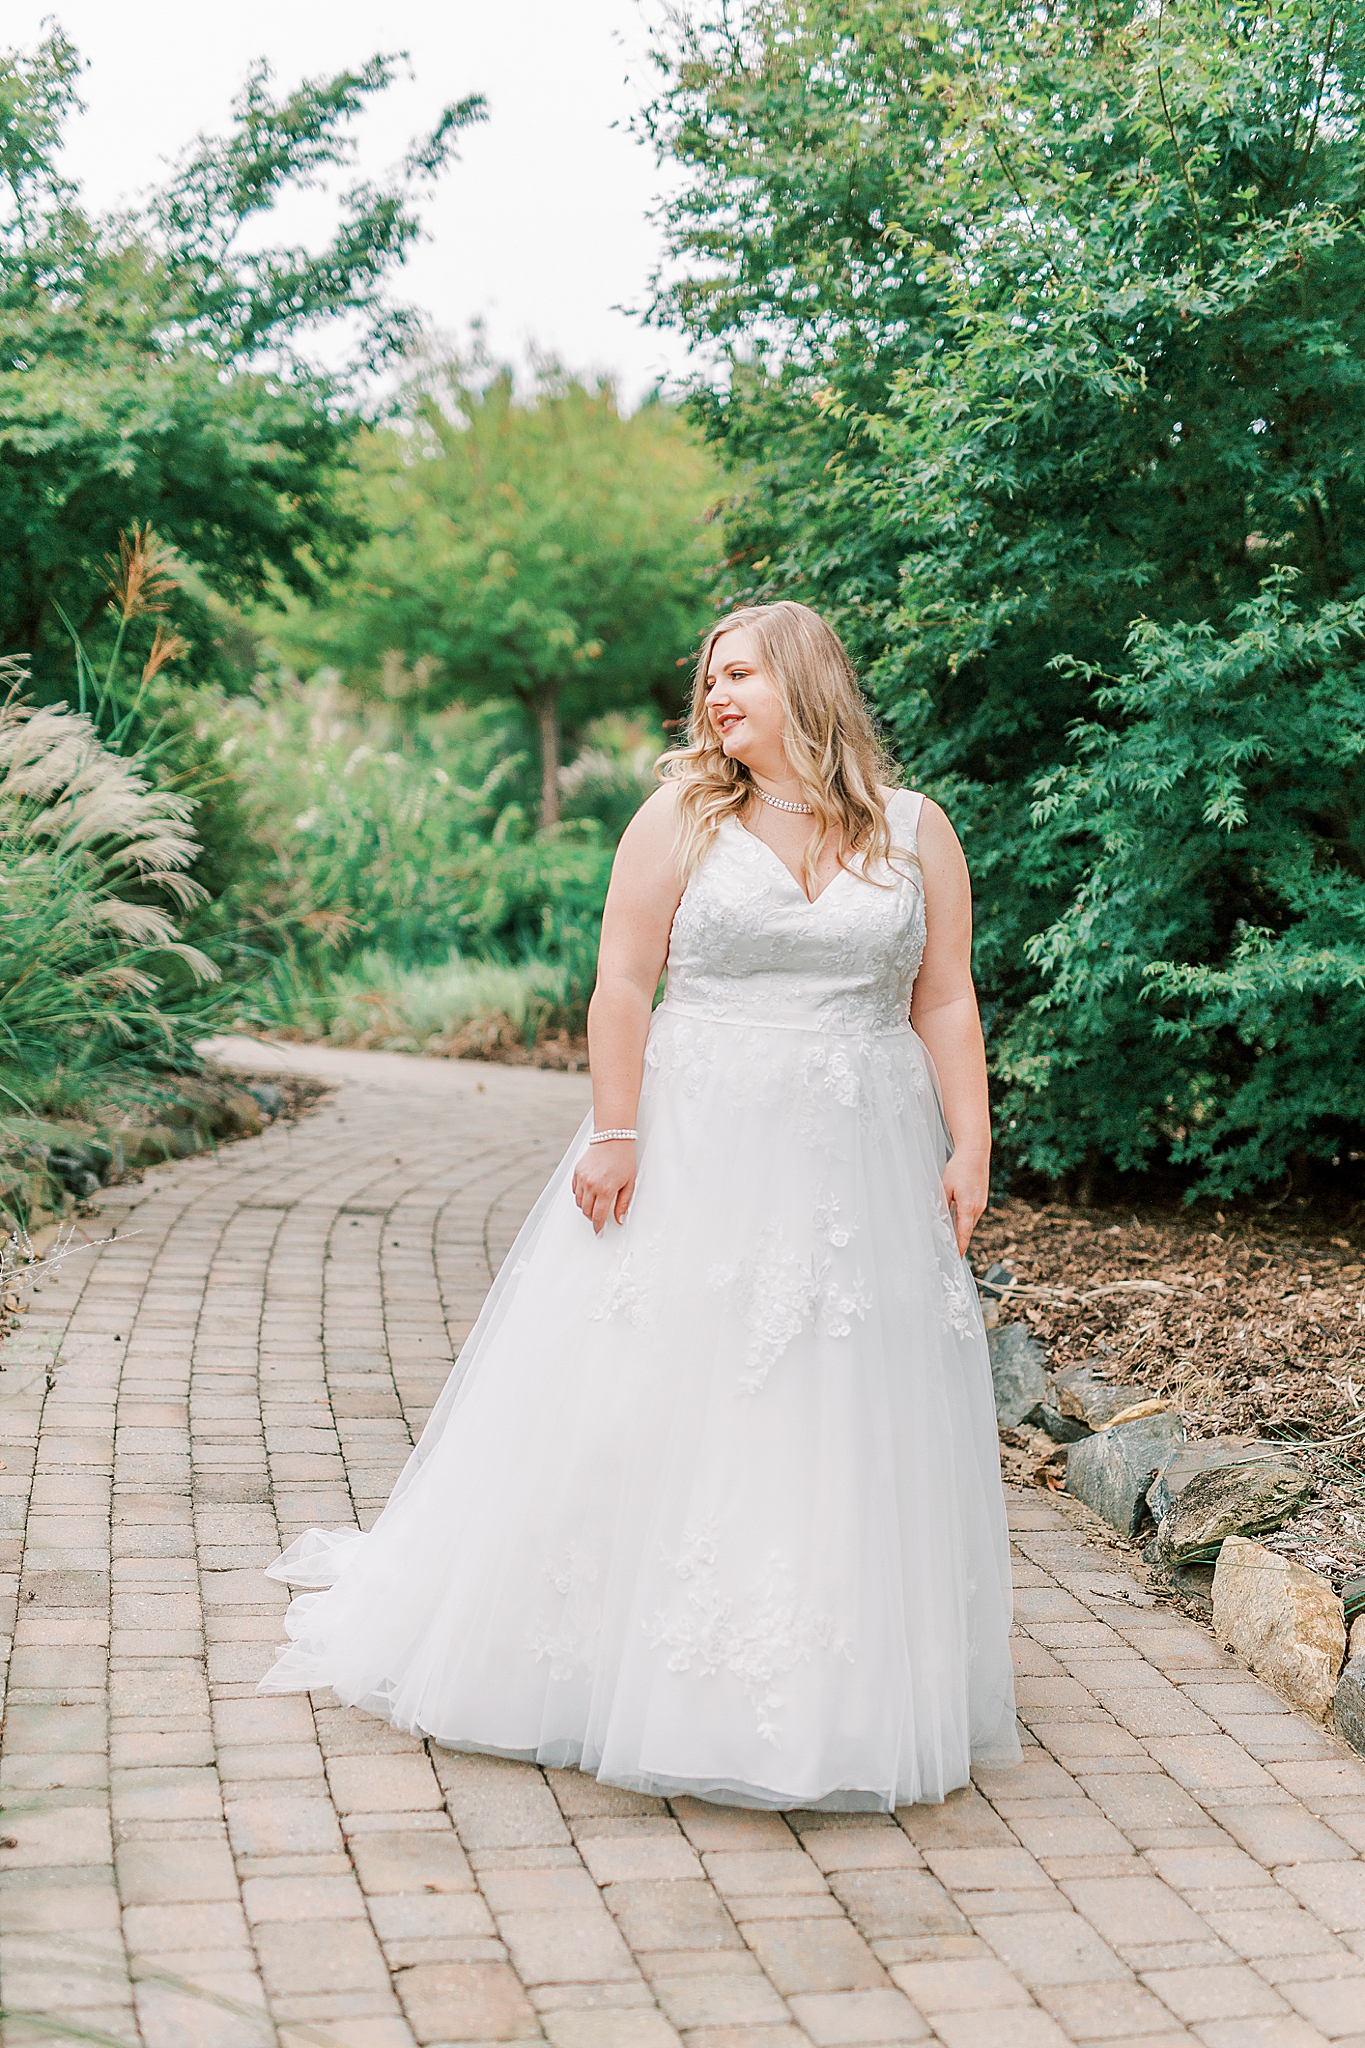 bride walks through gardens in wedding gown